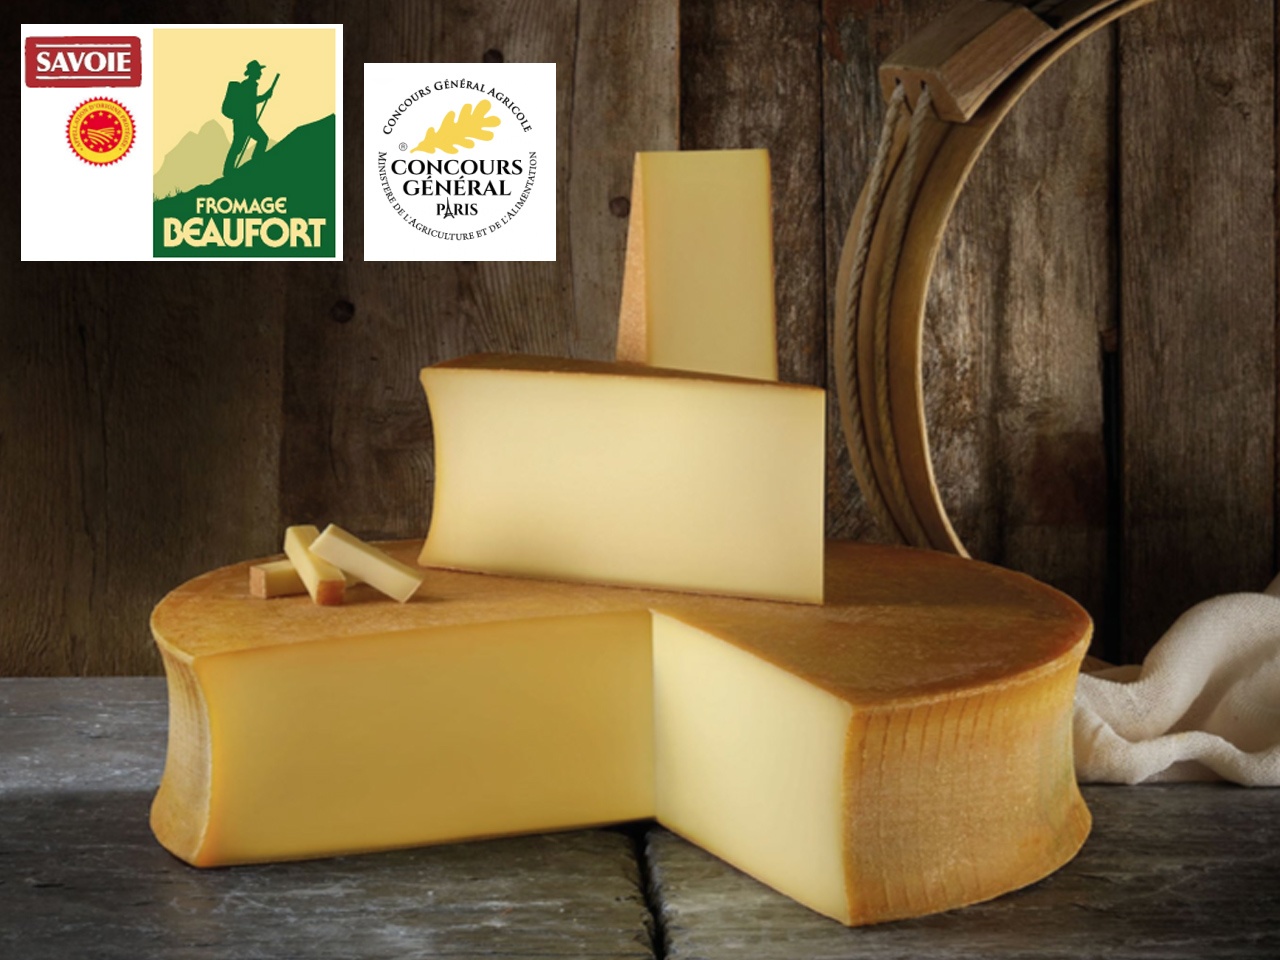 Le fromage Beaufort honoré au Concours Général Agricole, avec 2 médailles d’Or !